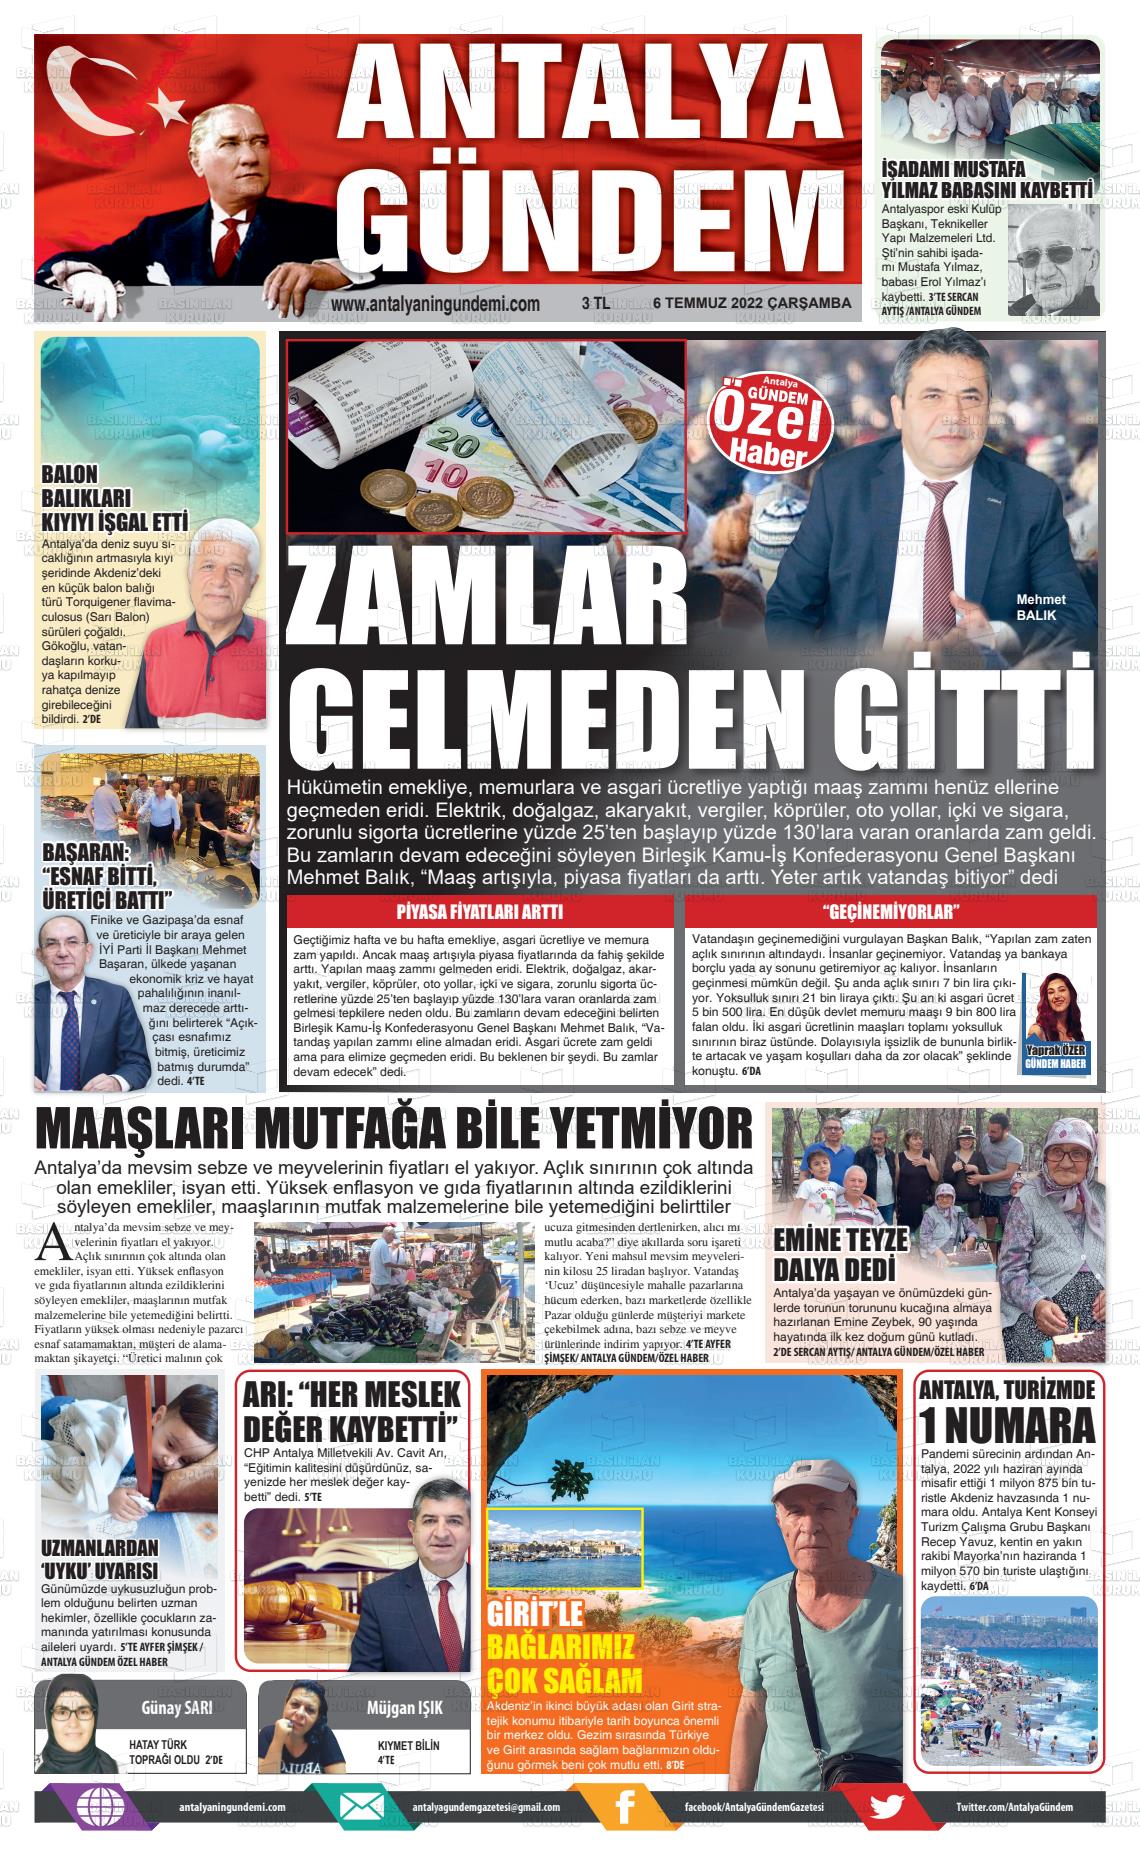 06 Temmuz 2022 Antalya'nın Gündemi Gazete Manşeti